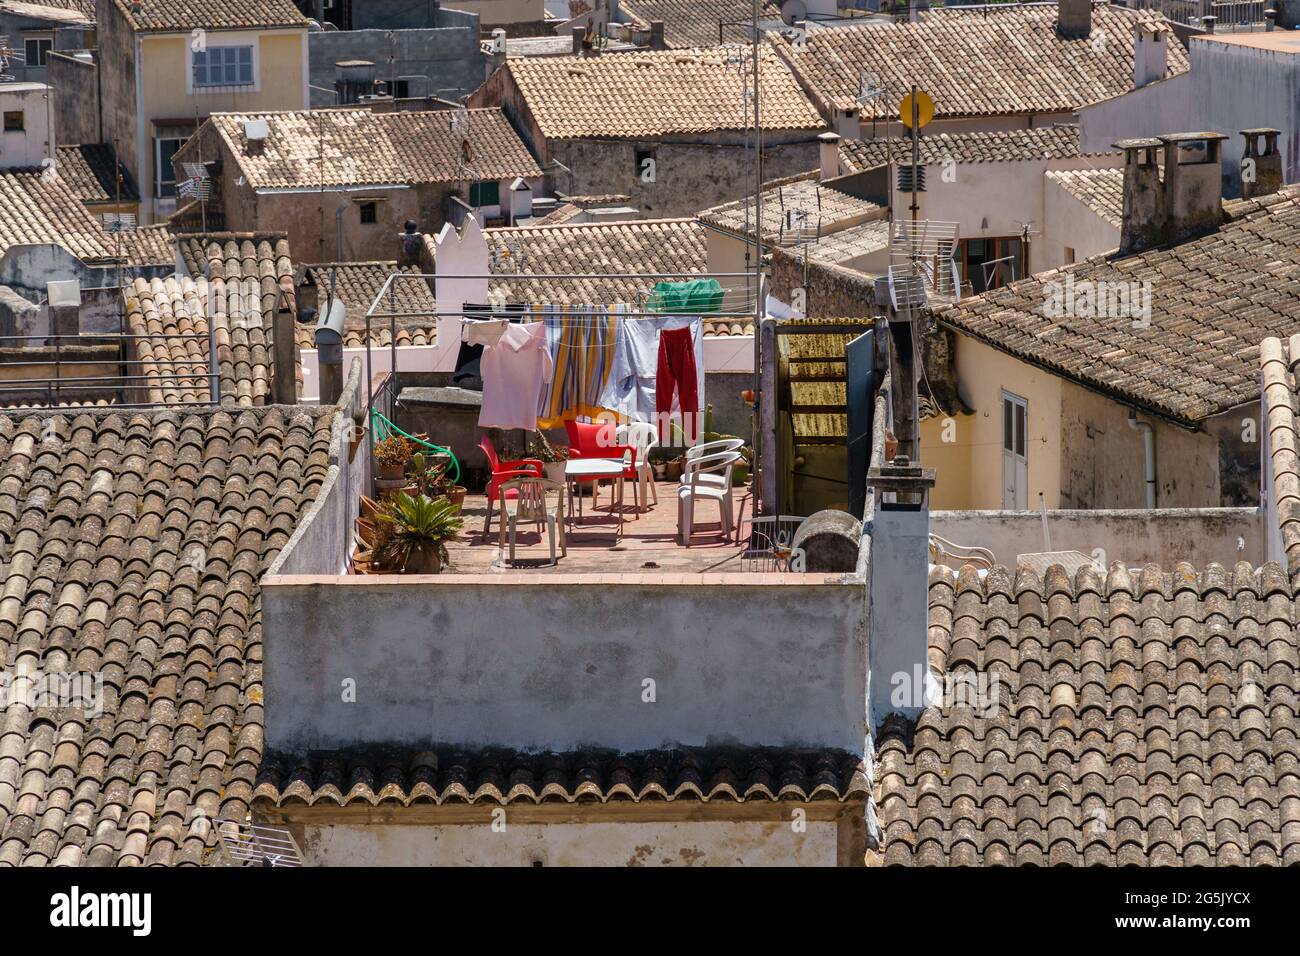 Secar la ropa en un tendedero al aire libre. Casas con tejas tradicionales en el hermoso casco antiguo de Arta, Mallorca, España. Cultura mediterránea. Foto de stock